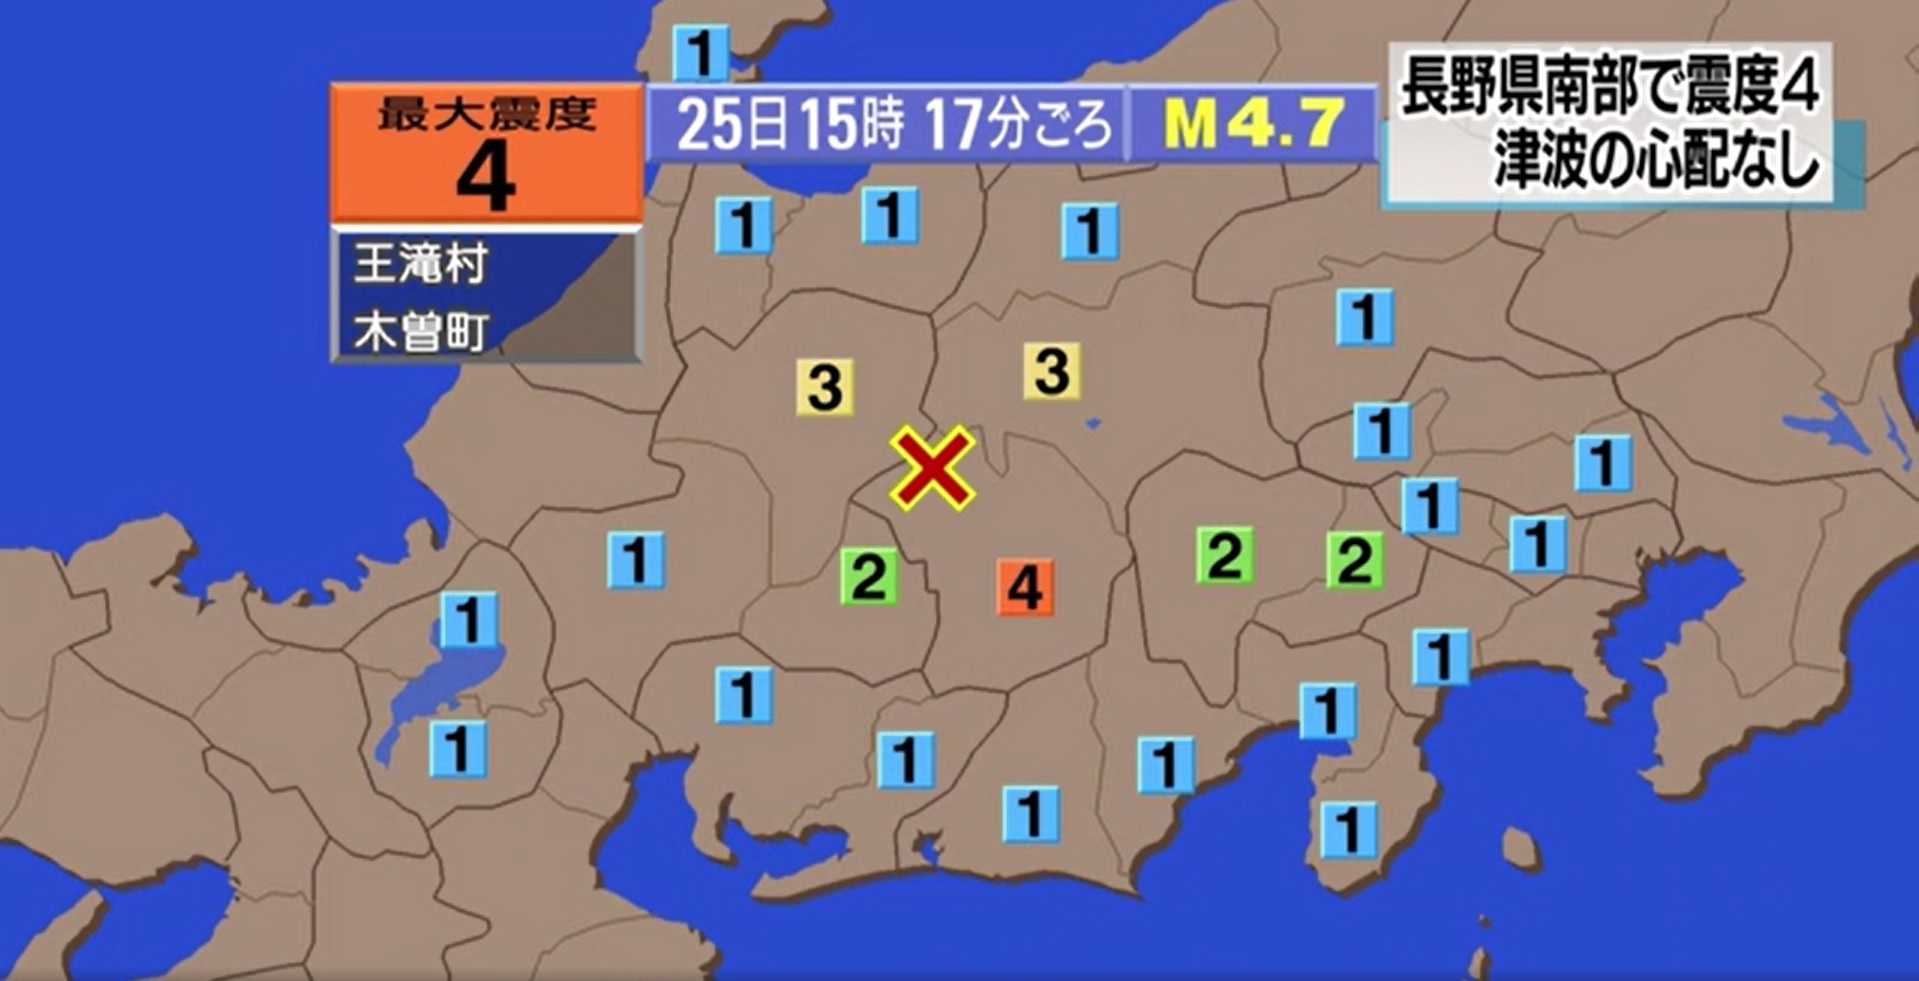 일본 나가노현 또 규모 4.7 지진…하루 사이 20여회 발생